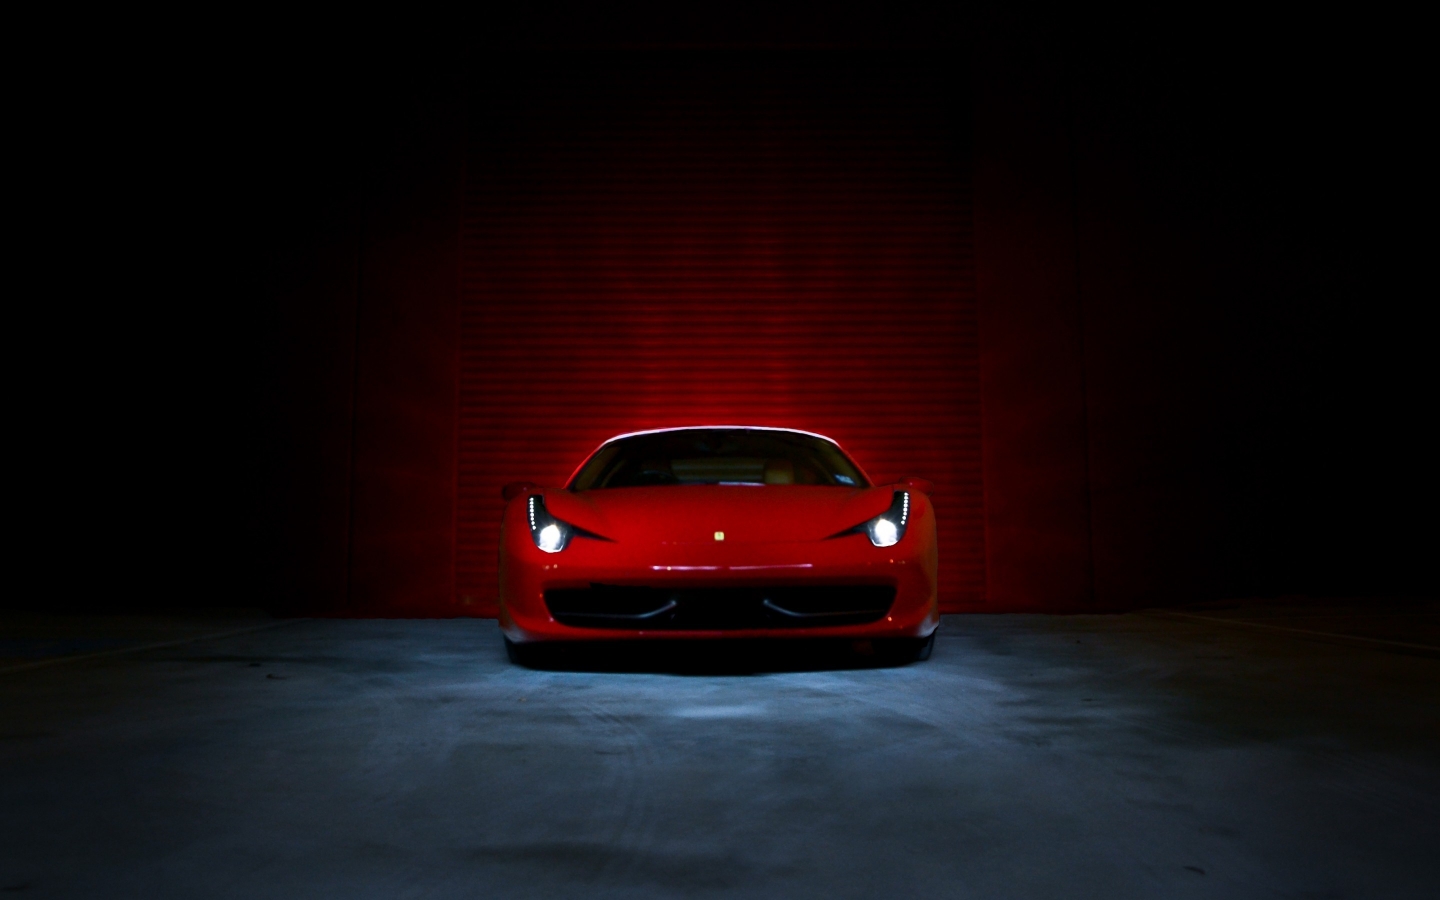 Ferrari 458 Italia Red  for 1440 x 900 widescreen resolution